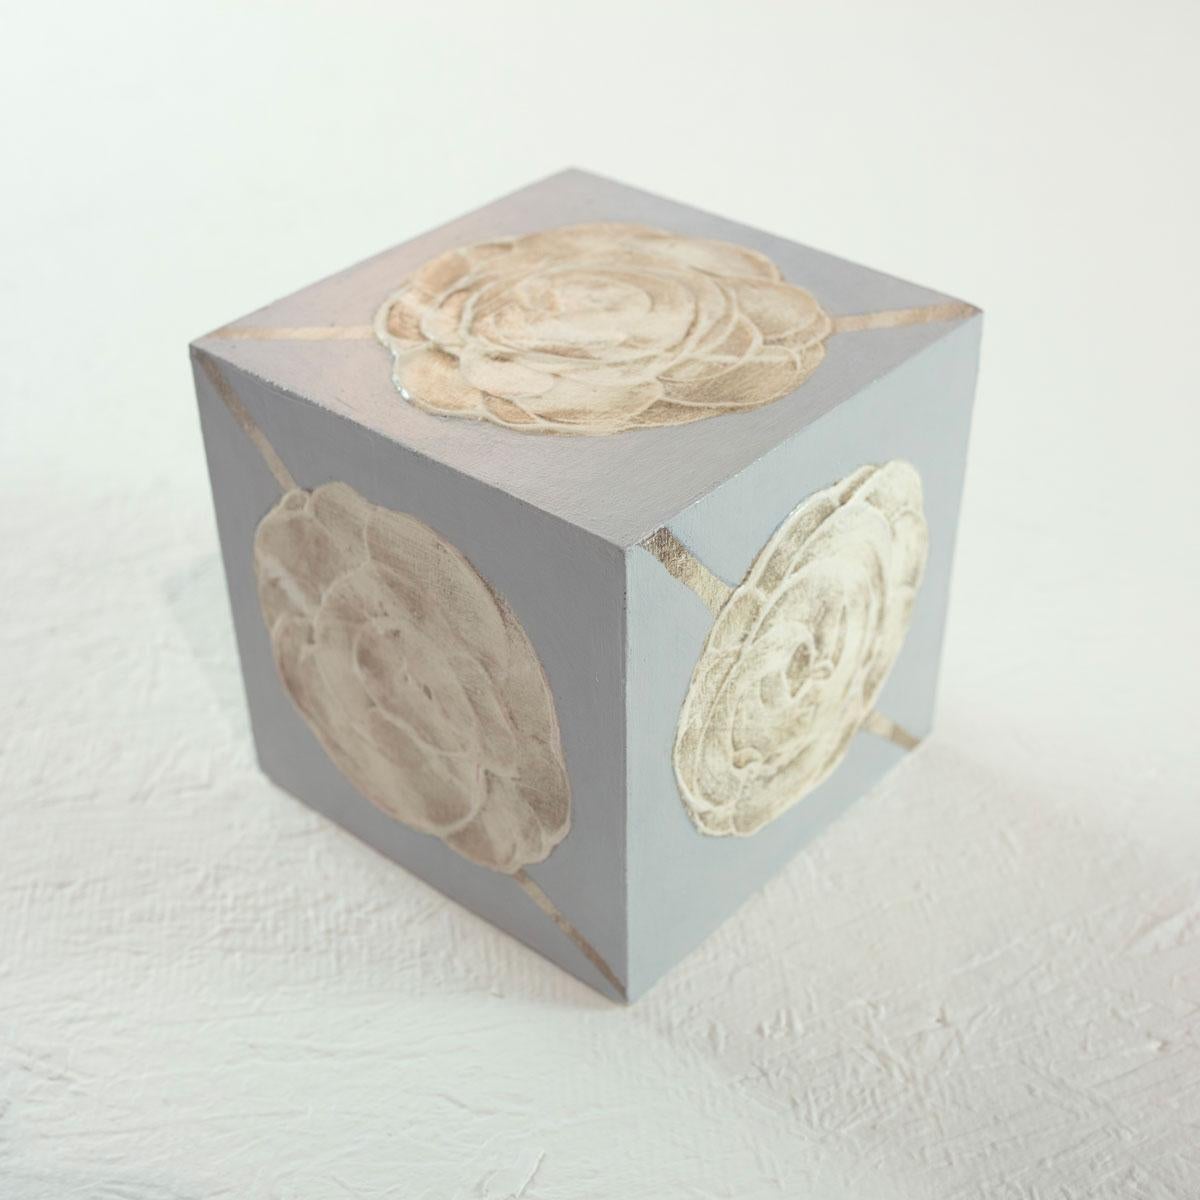 Ce cube sculptural de 5 pouces peint à la main par Sofie Swann est réalisé avec de la peinture acrylique et du gesso sur bois. Il présente une texture légère et une plaquette chaude et neutre, avec un fond gris et une grande forme florale abstraite